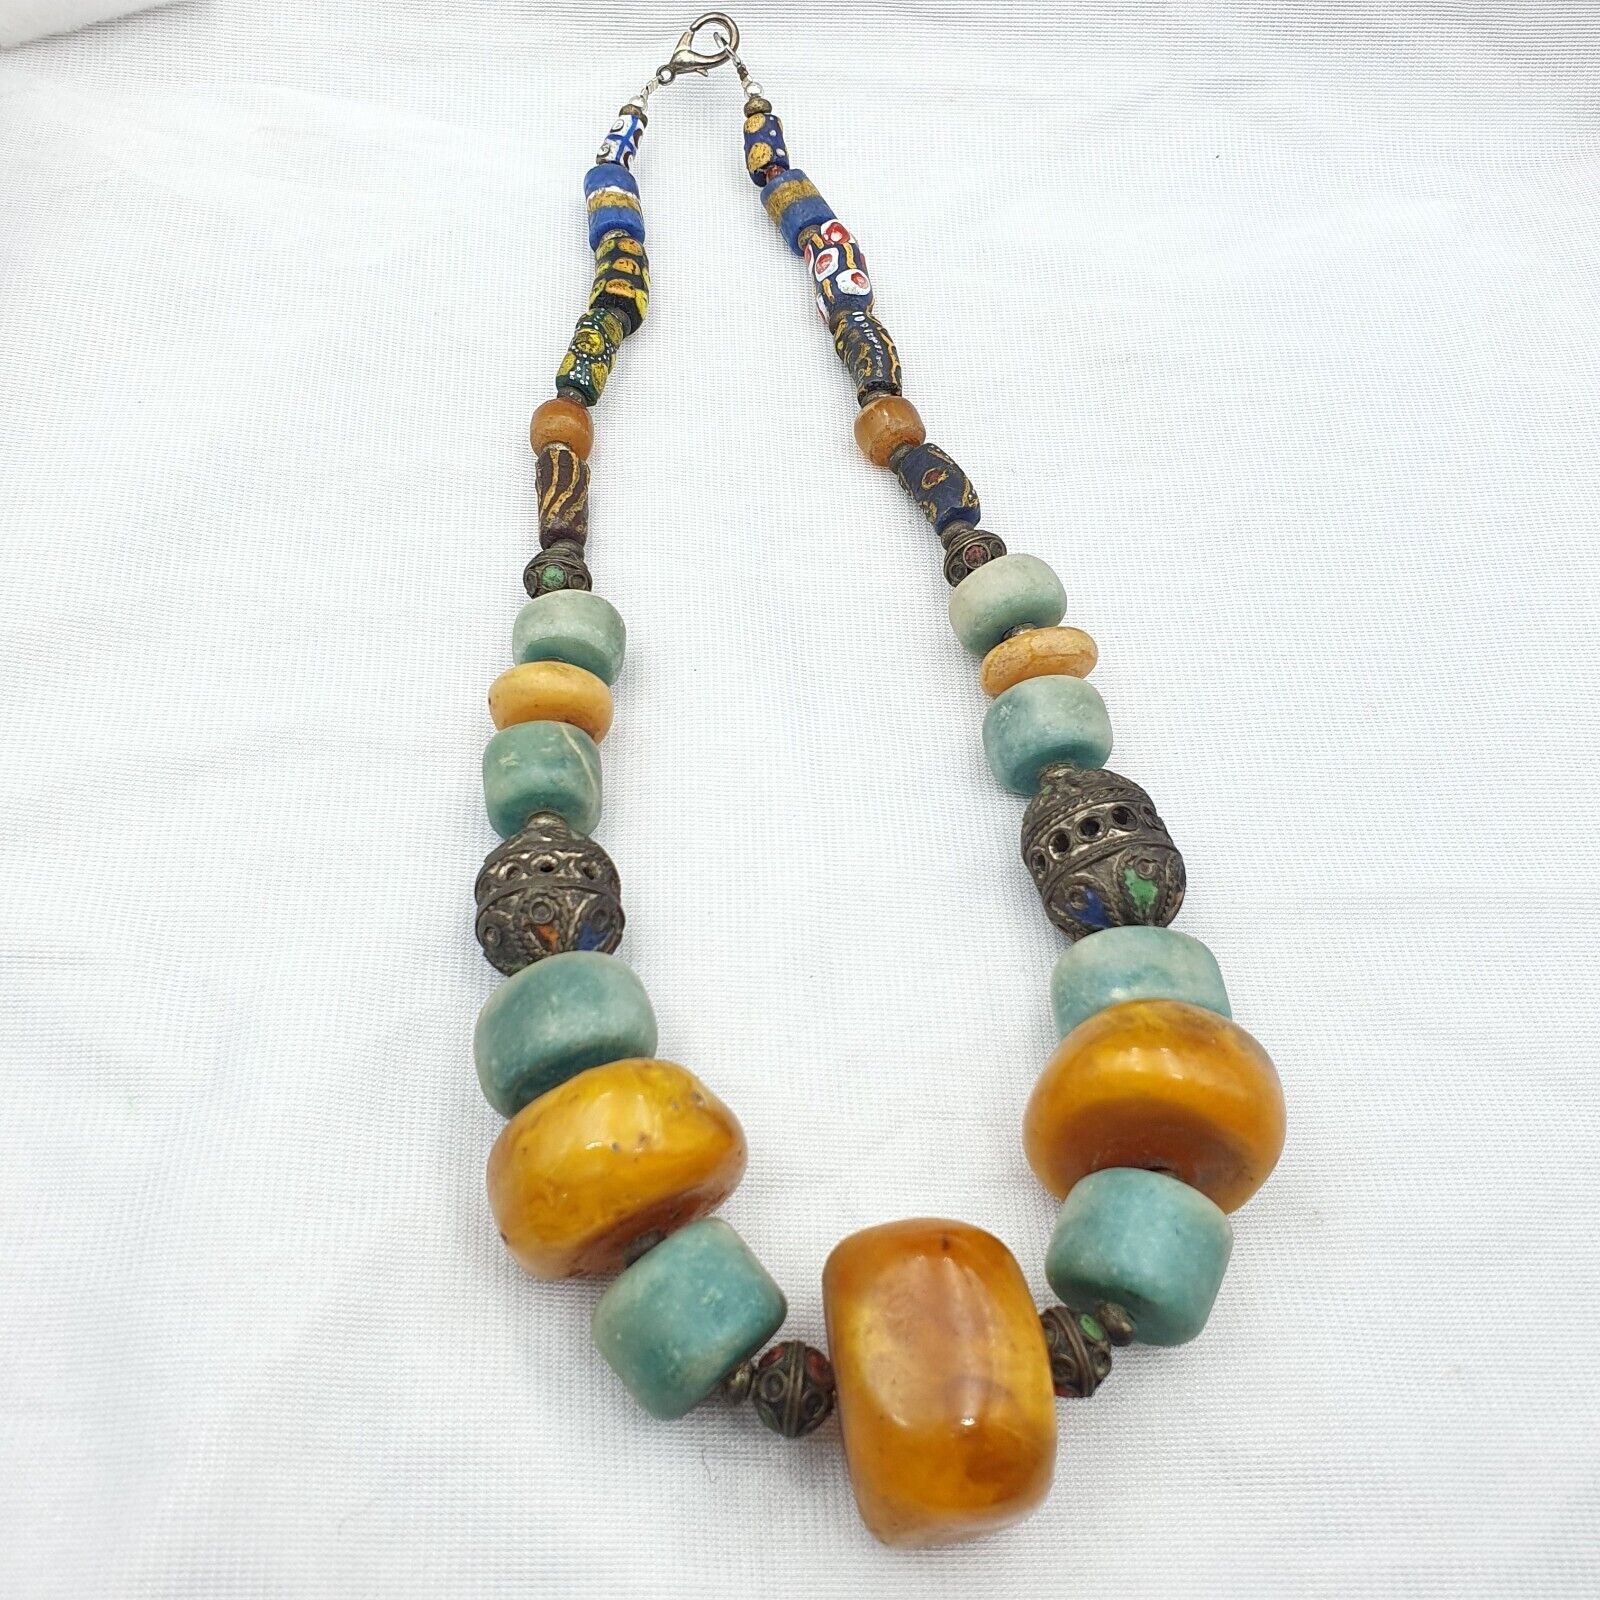 Marokkanische Halskette, handgefertigter Bernstein-Vintage-Schmuck, afrikanische Amazonit-Halskette